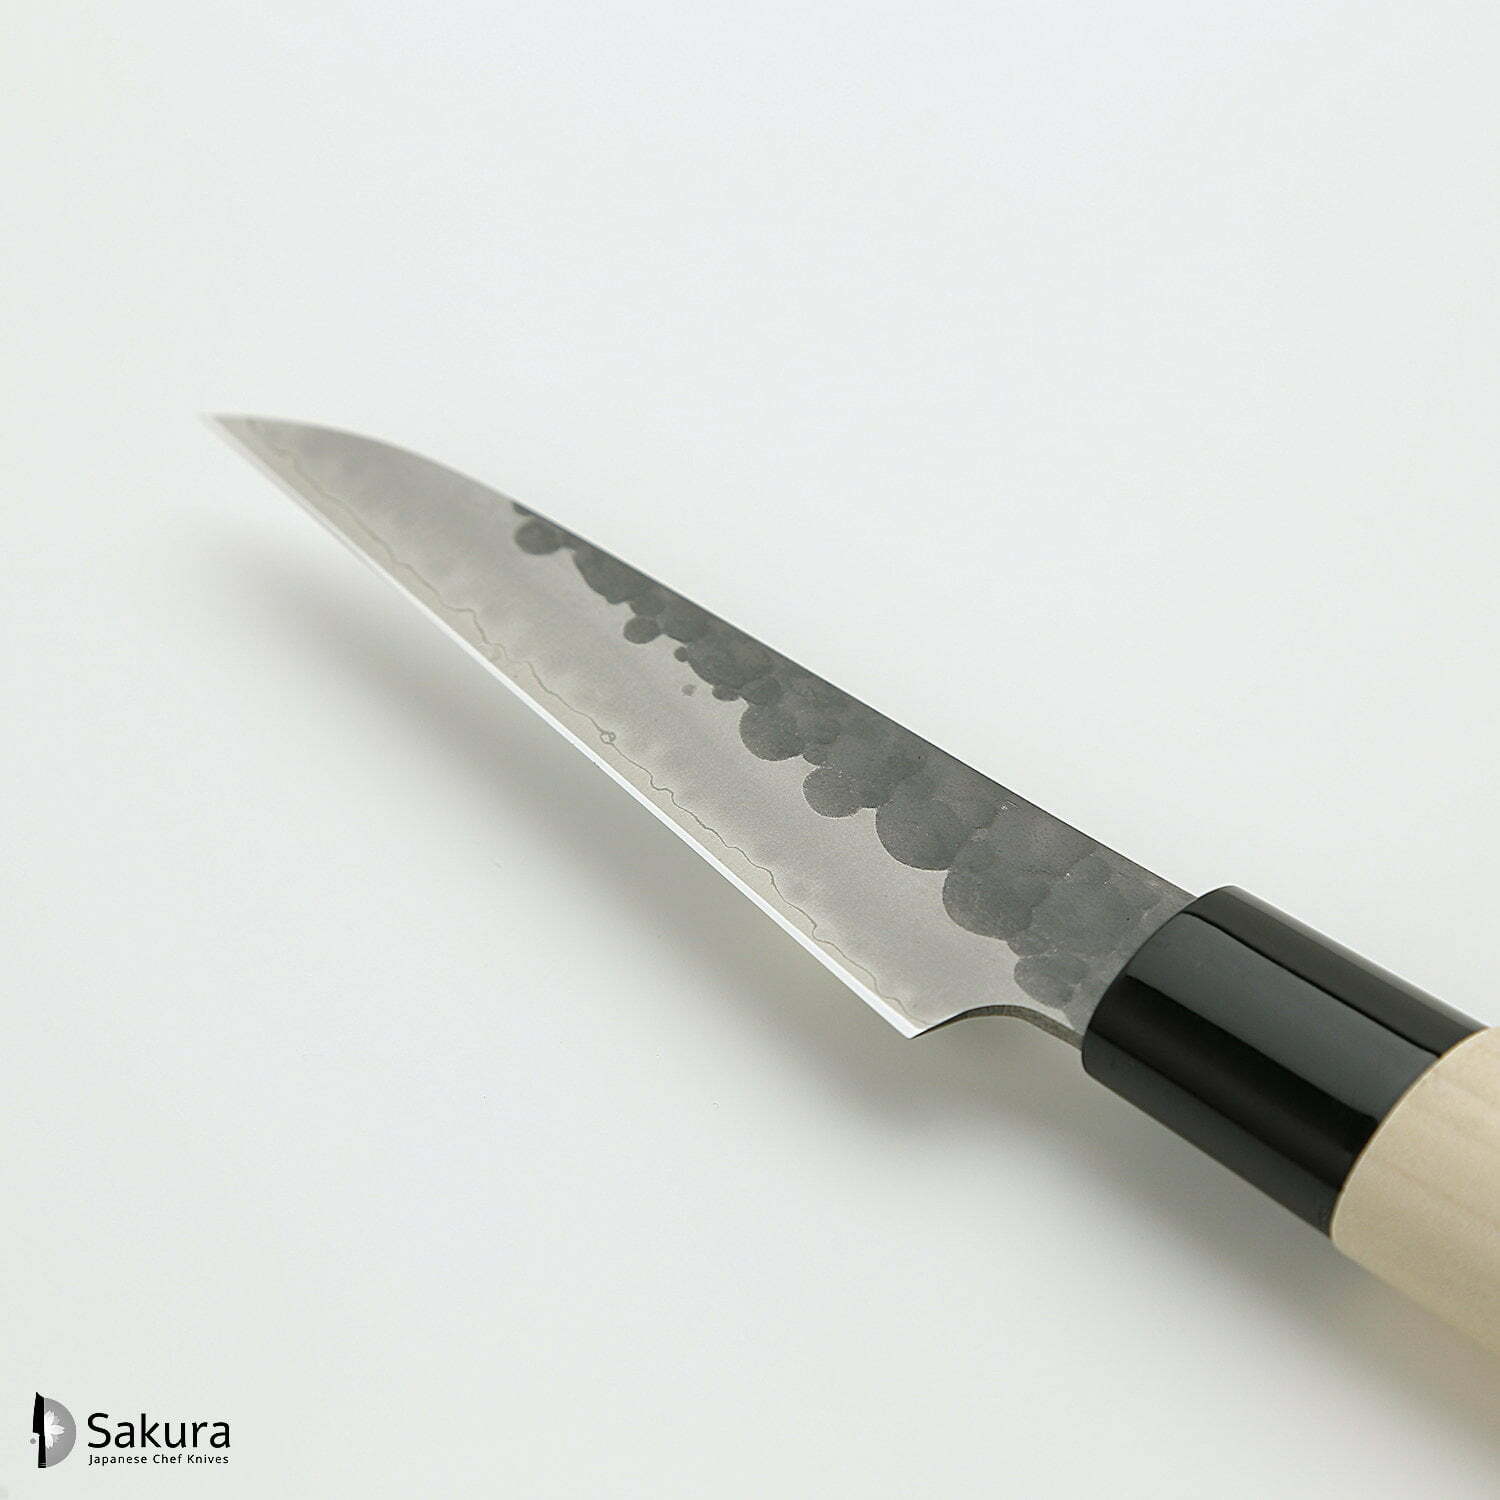 סכין עזר קטנה רב-תכליתית פֶּטִי 90מ״מ מחוזקת 3 שכבות: פלדת פחמן יפנית VG-10 עטופה פלדת אל-חלד גימור קורואיצ׳י שחור עם ריקוע פטיש טוג׳ירו יפן